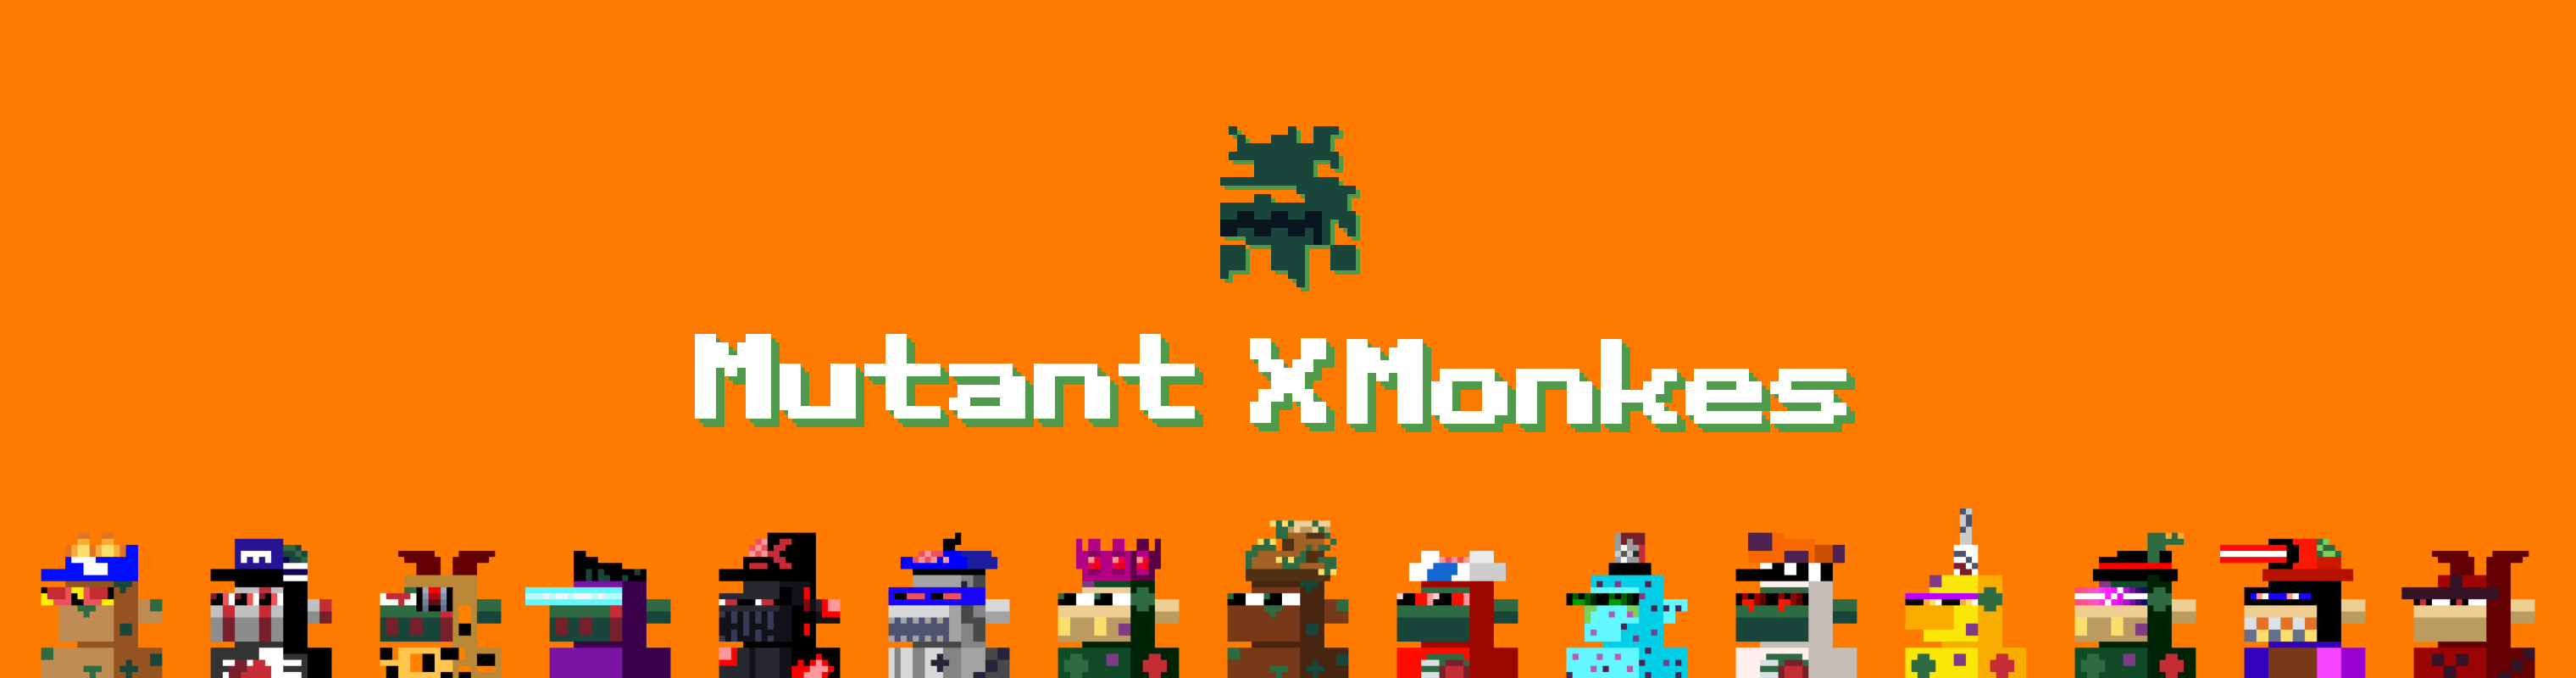 Mutant xMonkes - Collection - Ordzaar